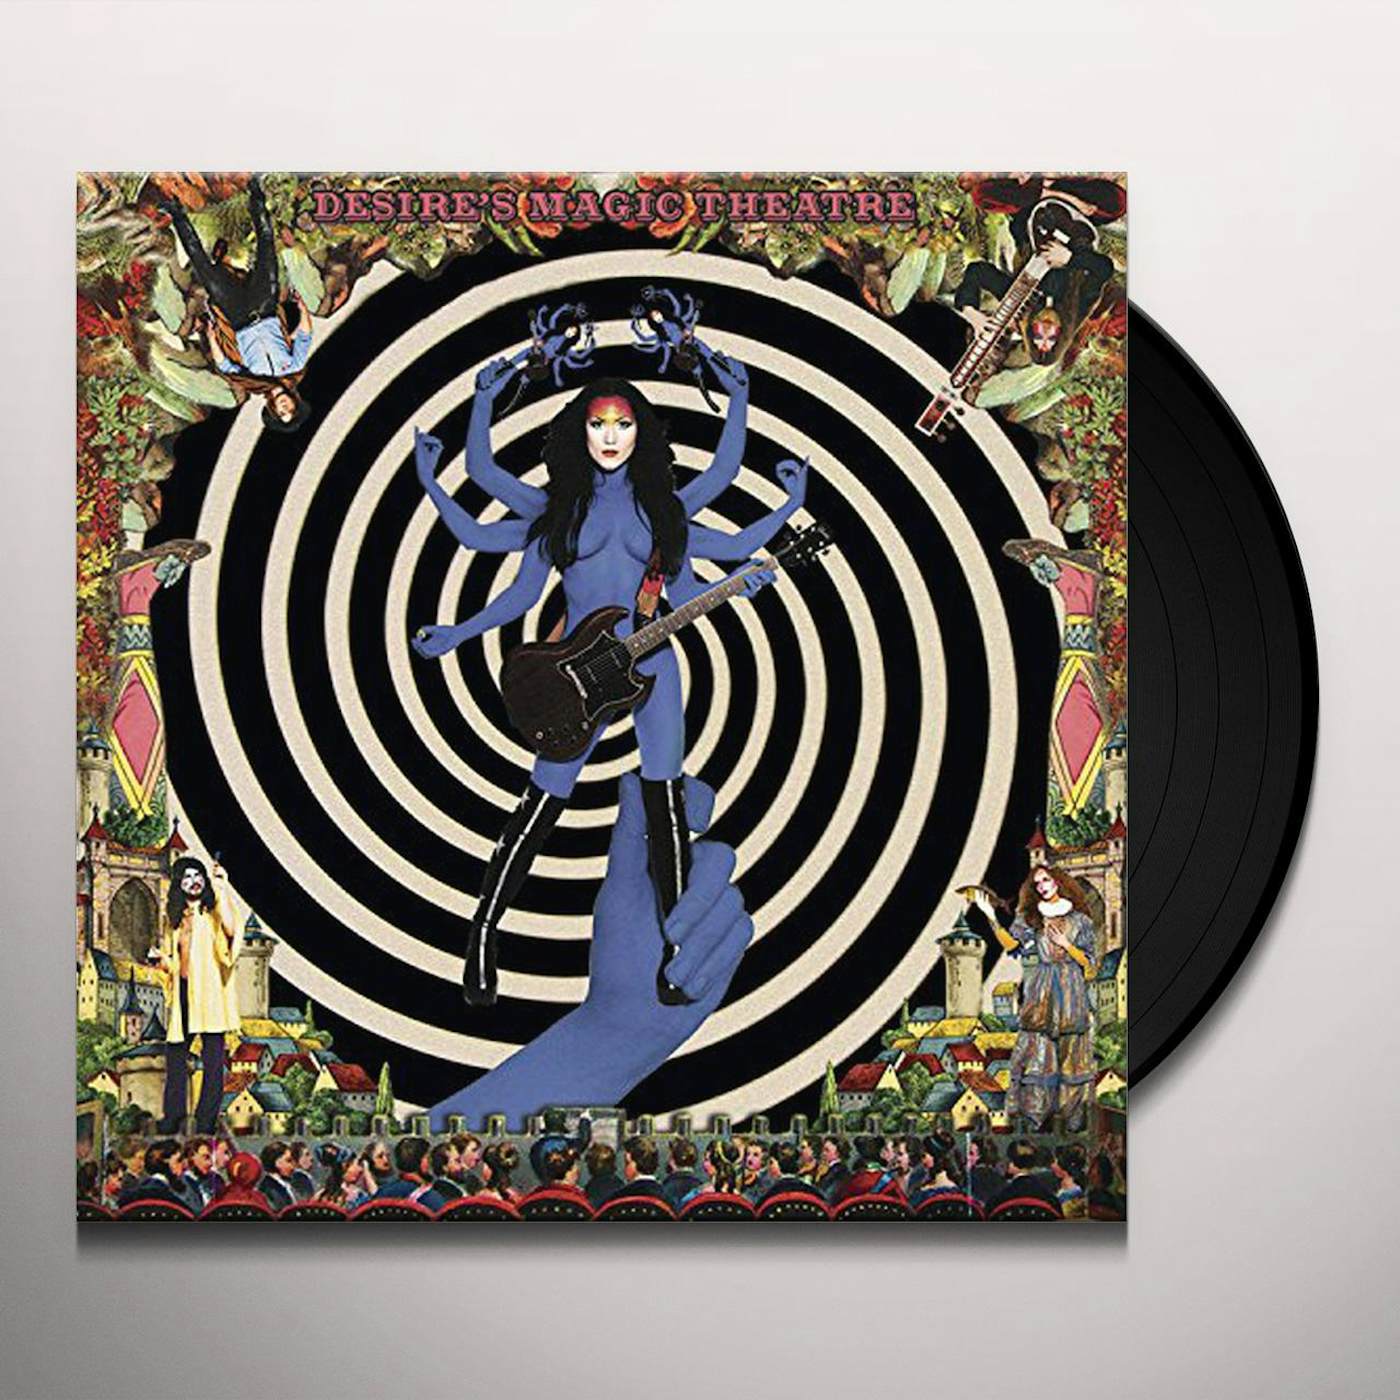 Purson Desire's Magic Theatre Vinyl Record